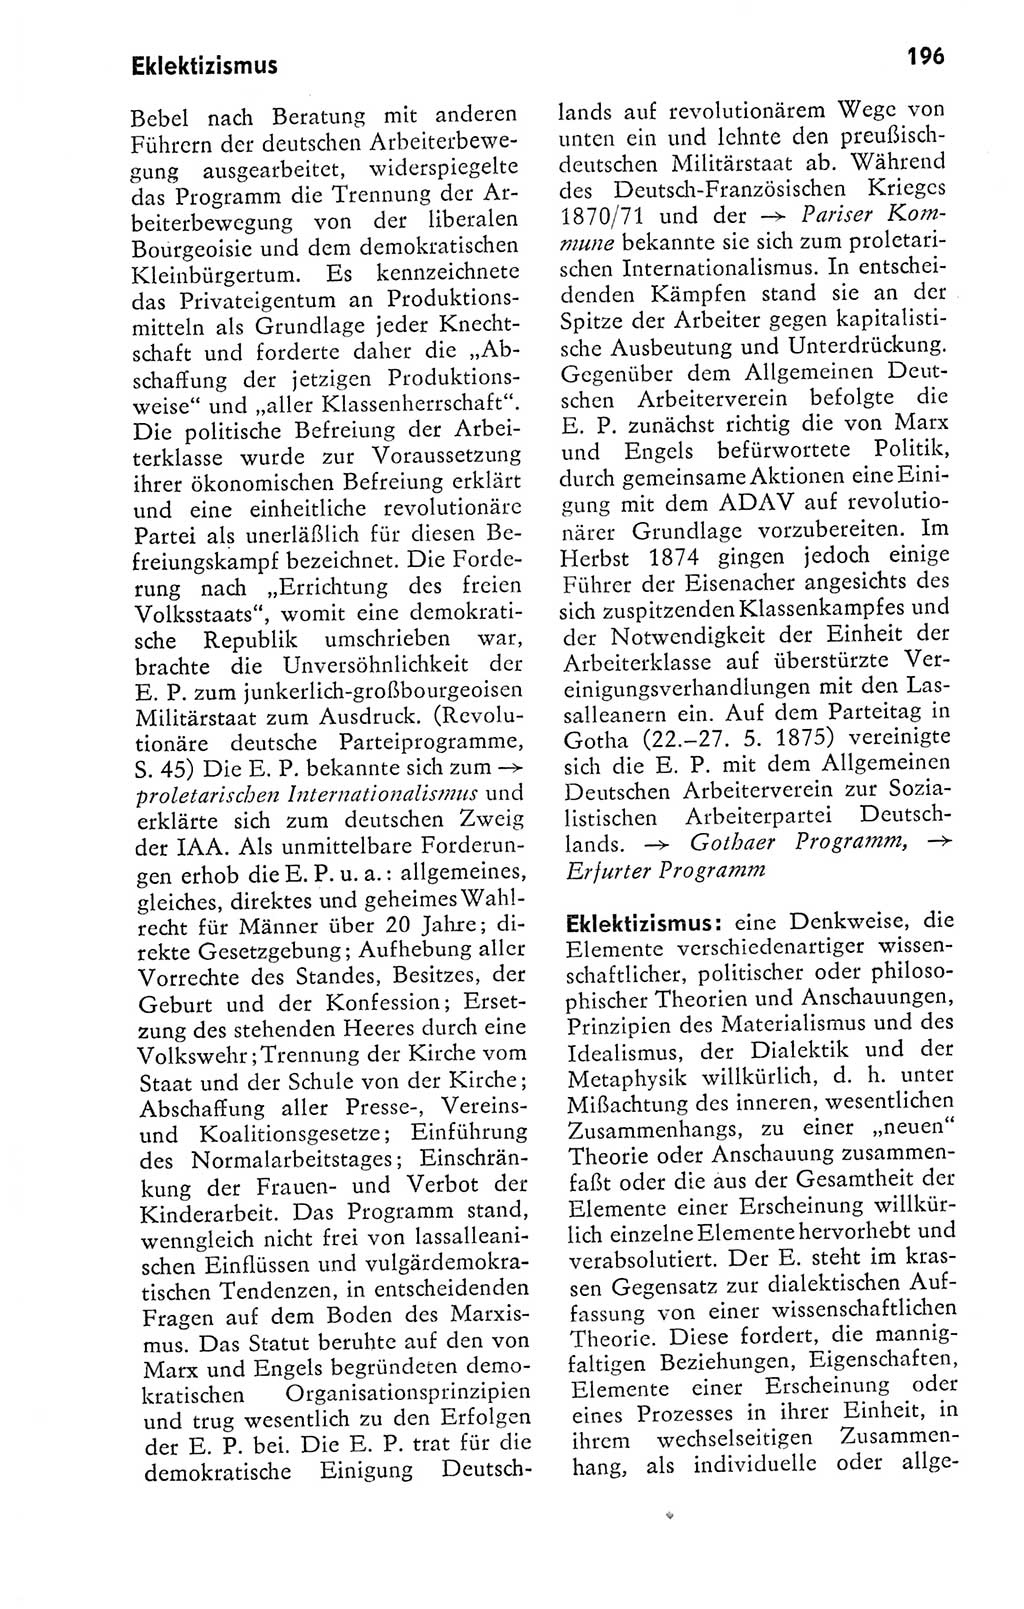 Kleines politisches Wörterbuch [Deutsche Demokratische Republik (DDR)] 1978, Seite 196 (Kl. pol. Wb. DDR 1978, S. 196)